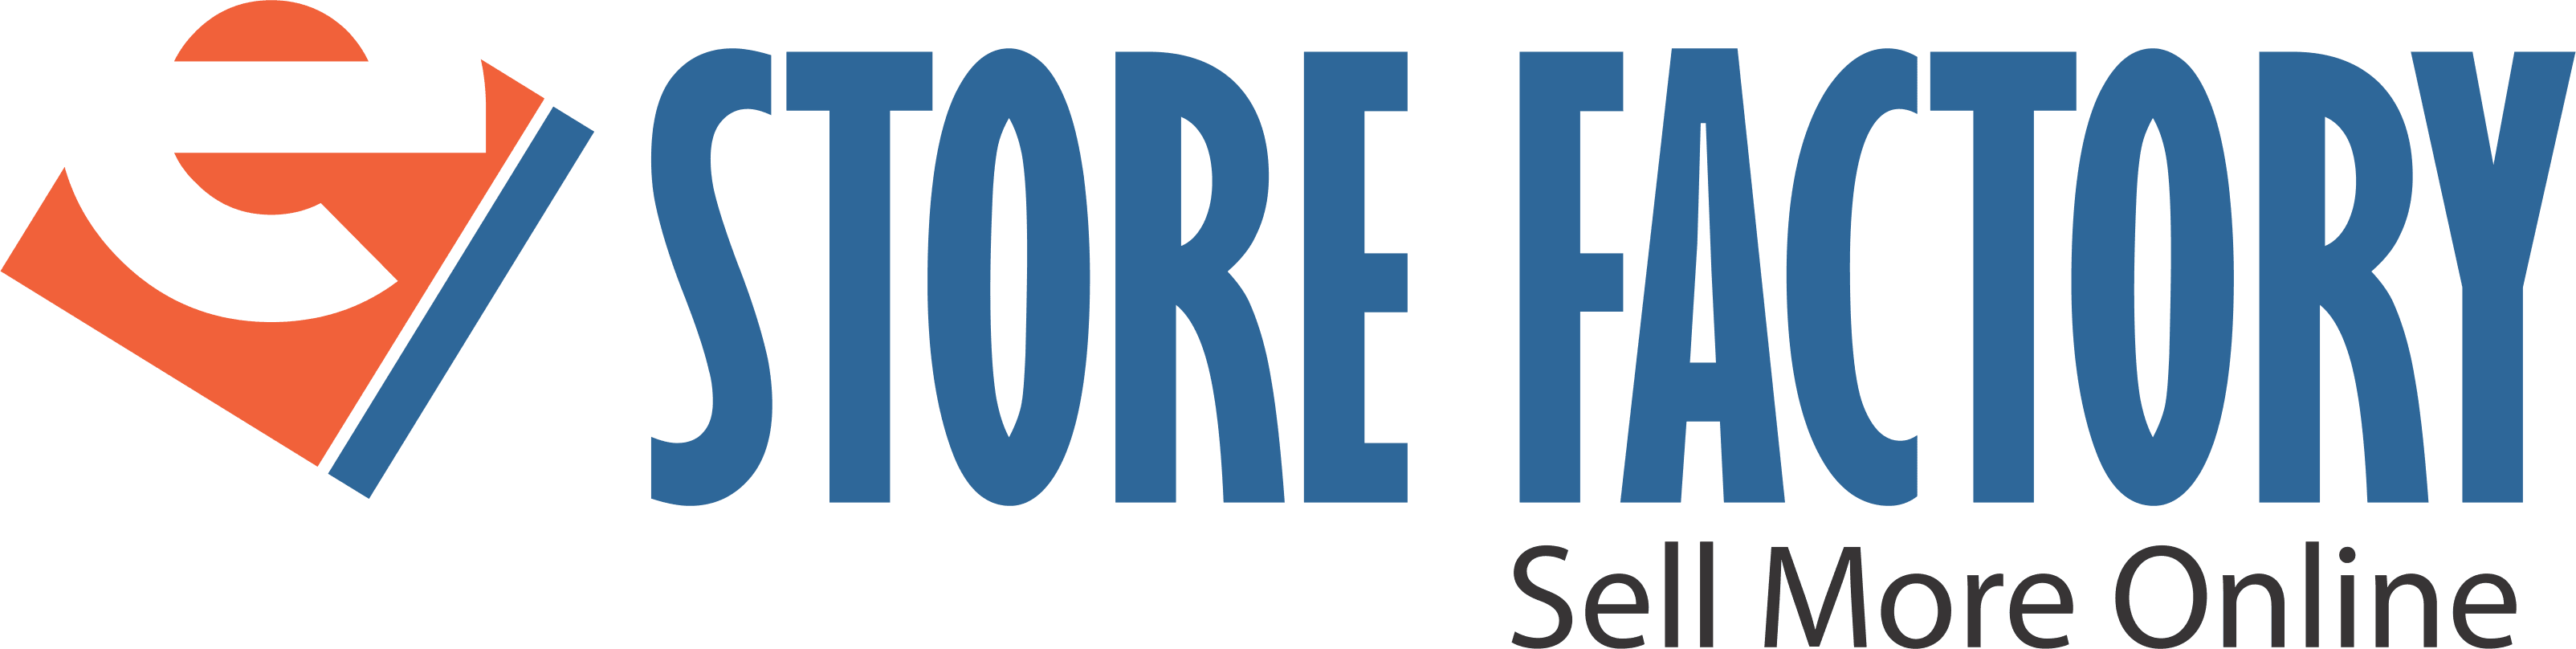 Company Logo For EStore Factory'